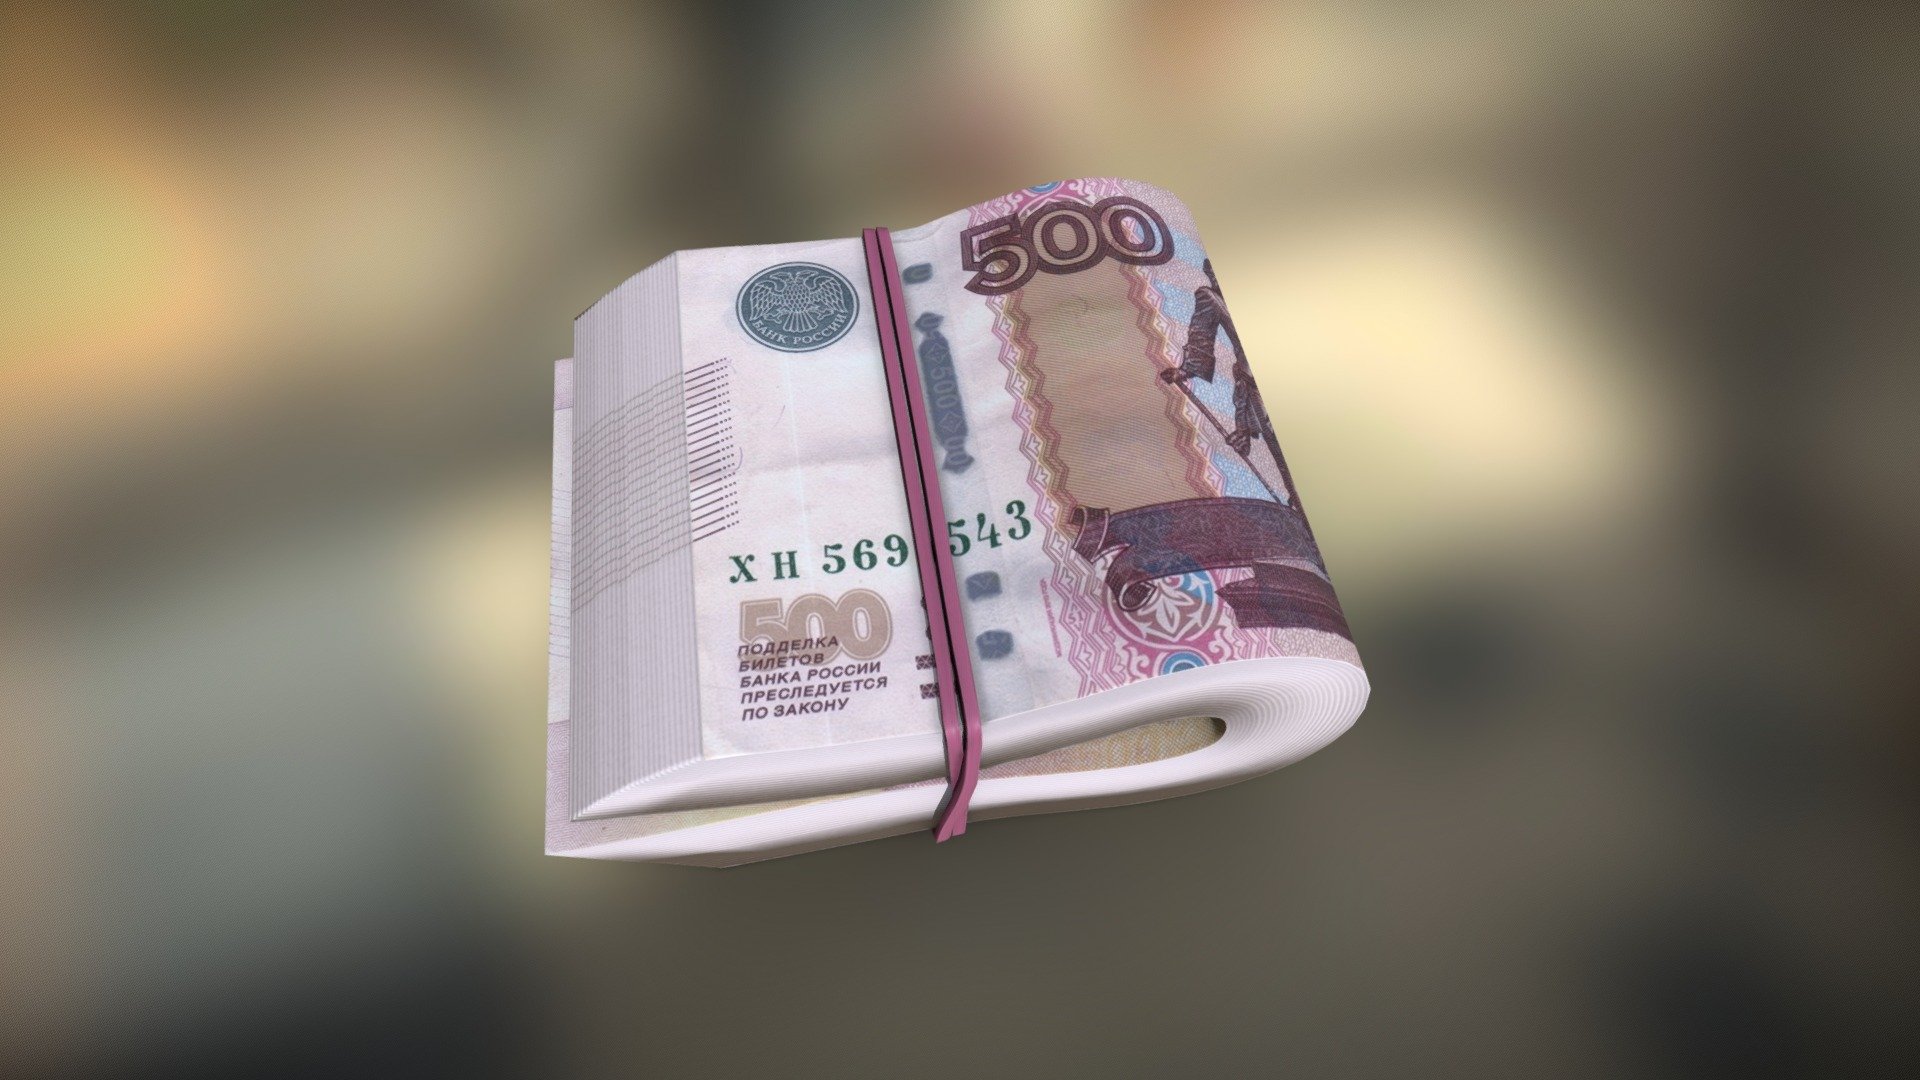 Bundle Of Rubles 500